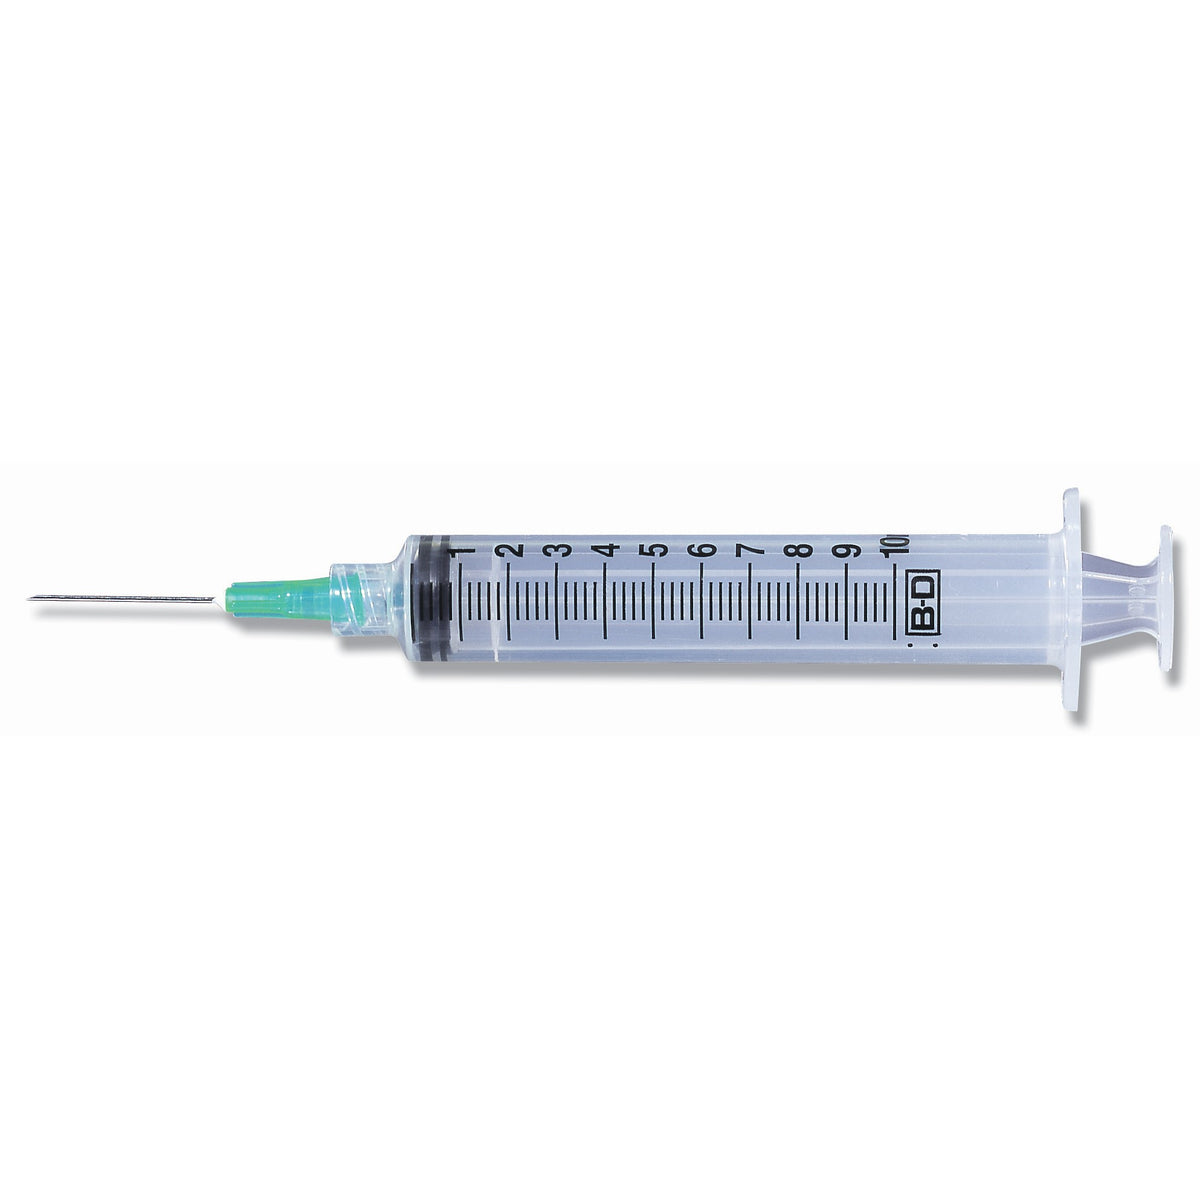 BD Syringe 3ml 21 Gauge 1 Inch Needle 100/box (309575)